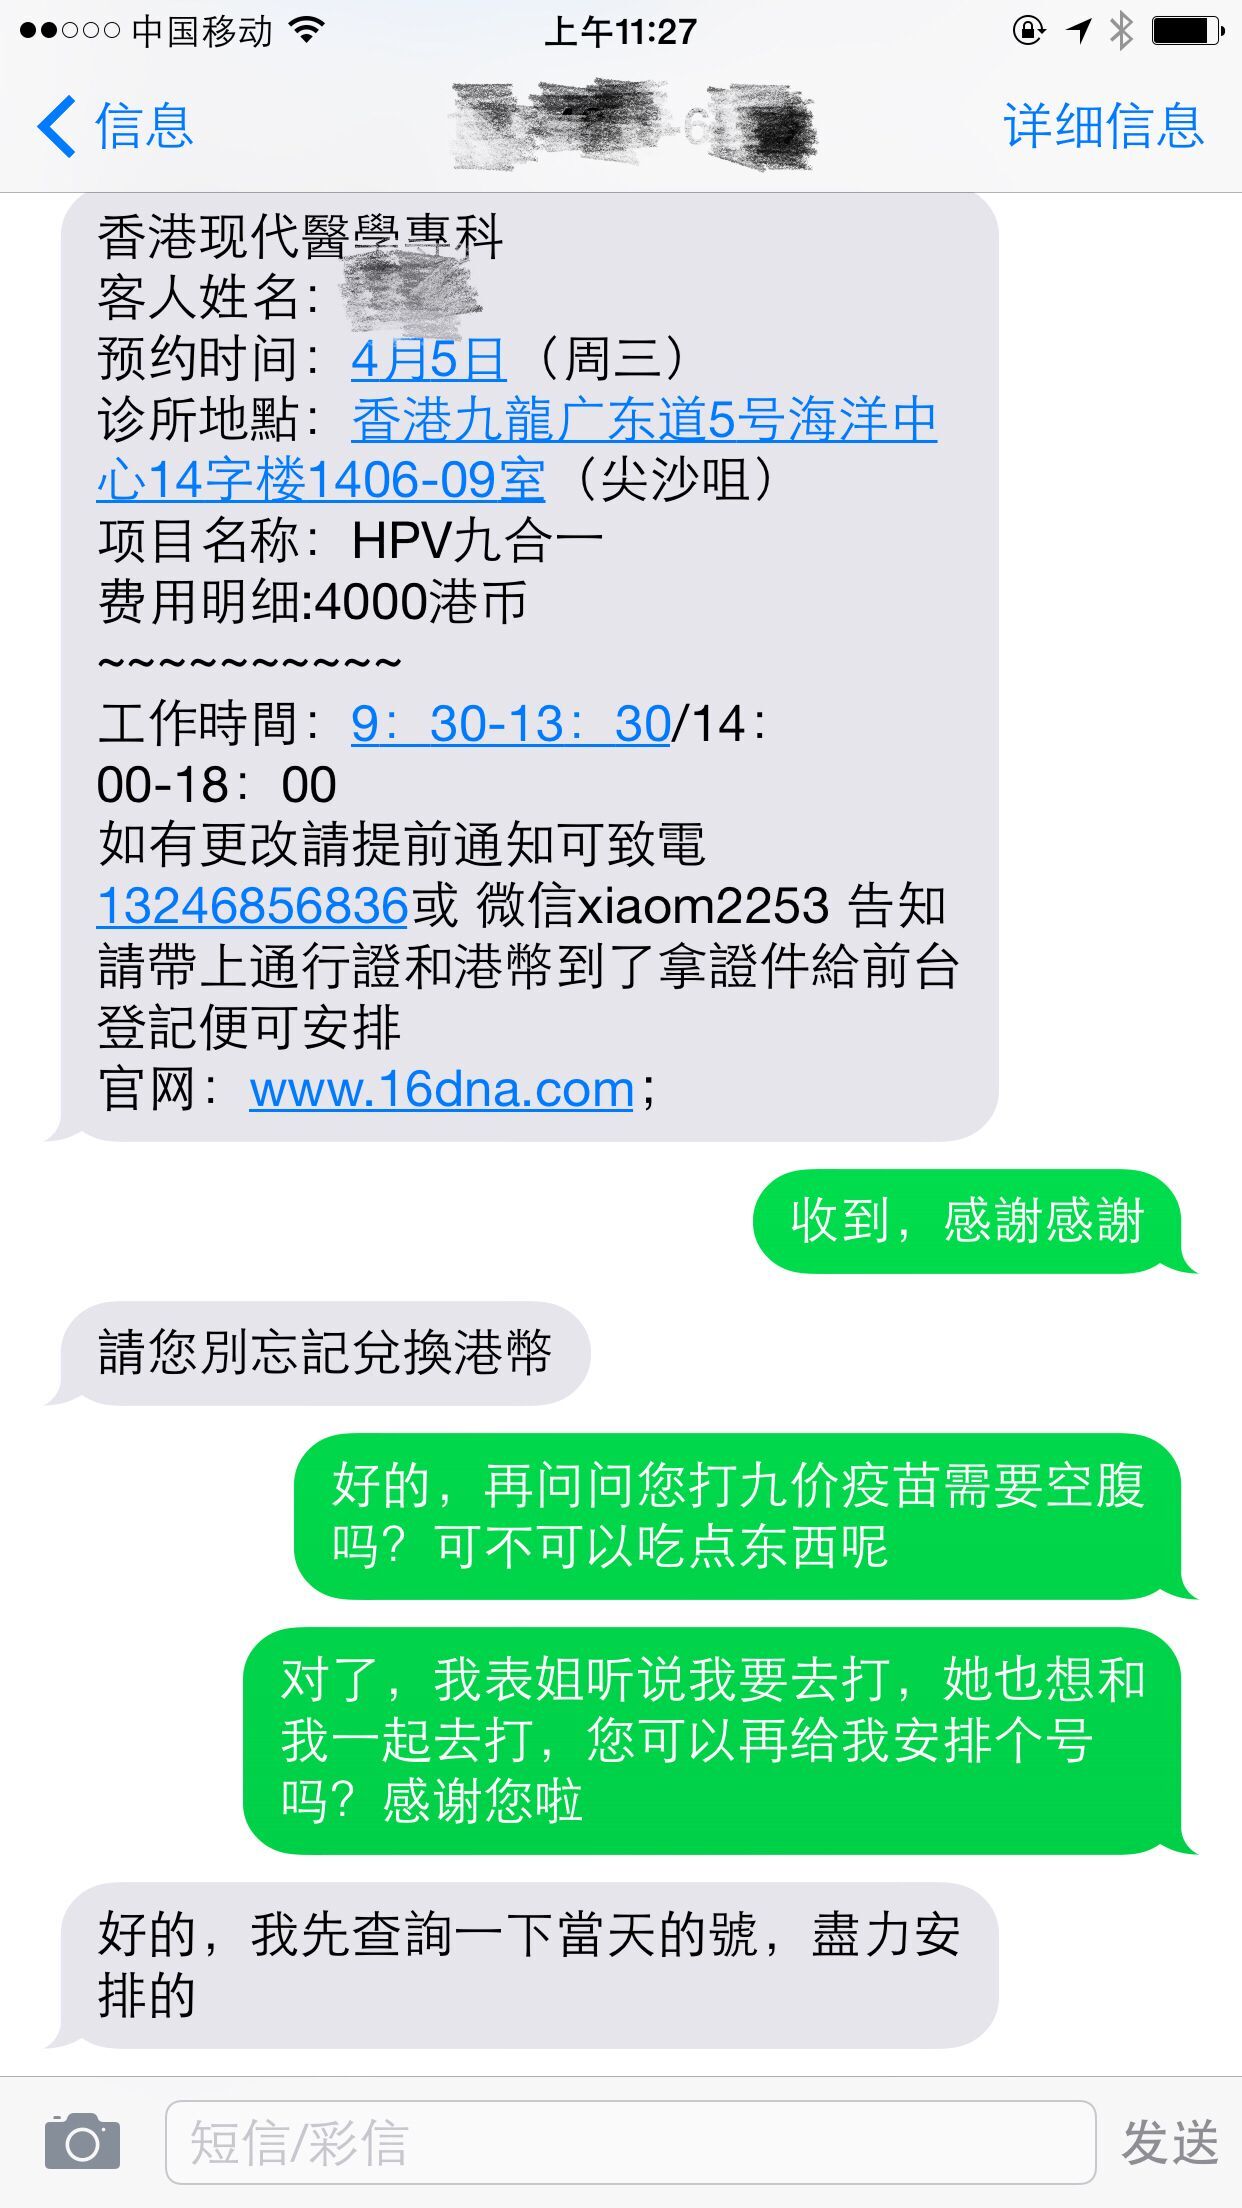 关于去香港打子宫颈癌hpv疫苗费用,流程,注意事